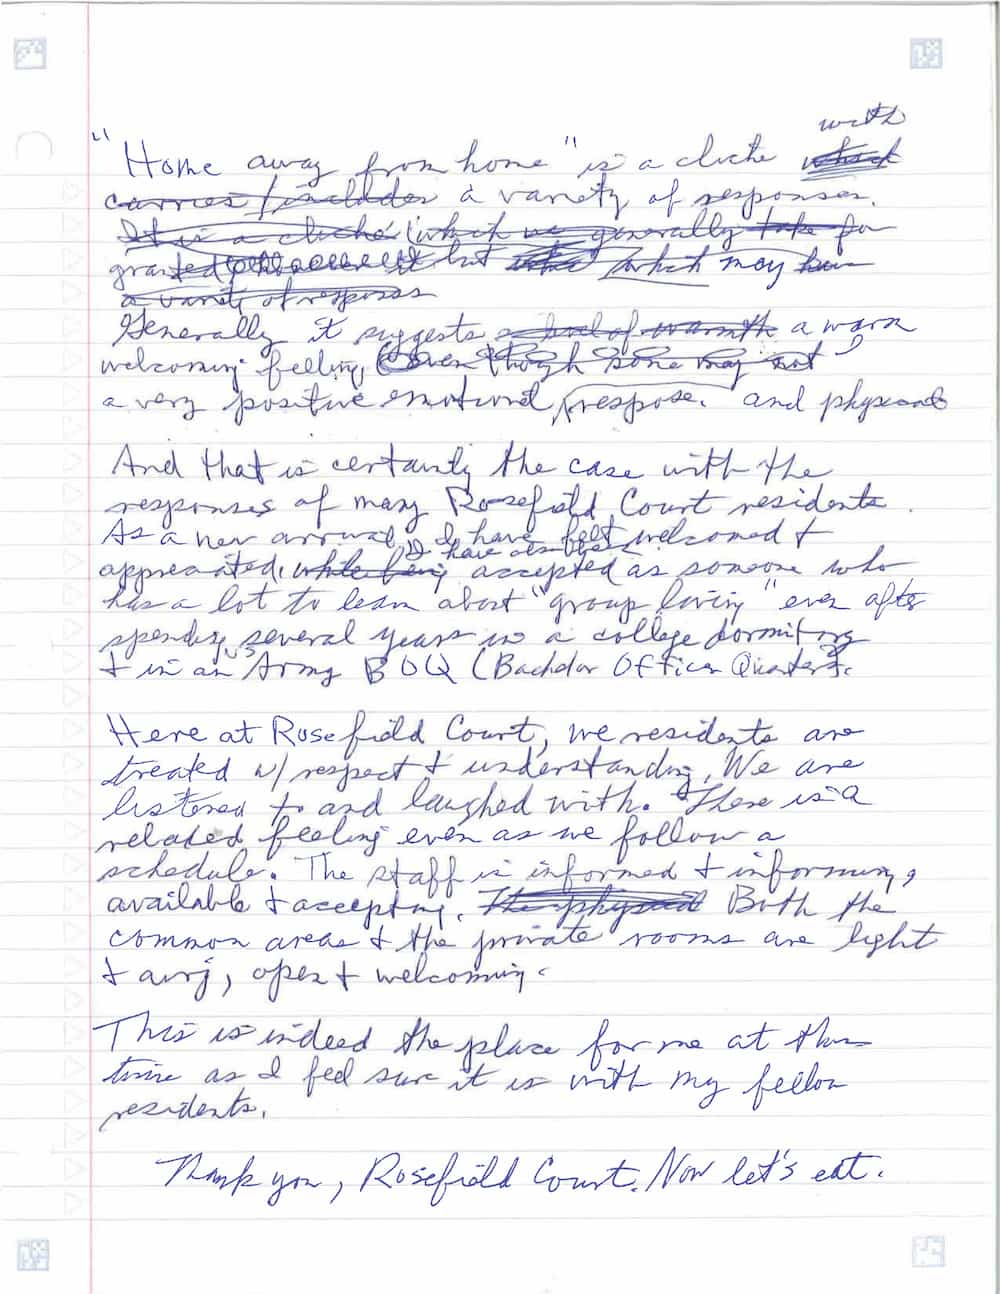 handwritten letter from a 12 Oaks Senior Living resident